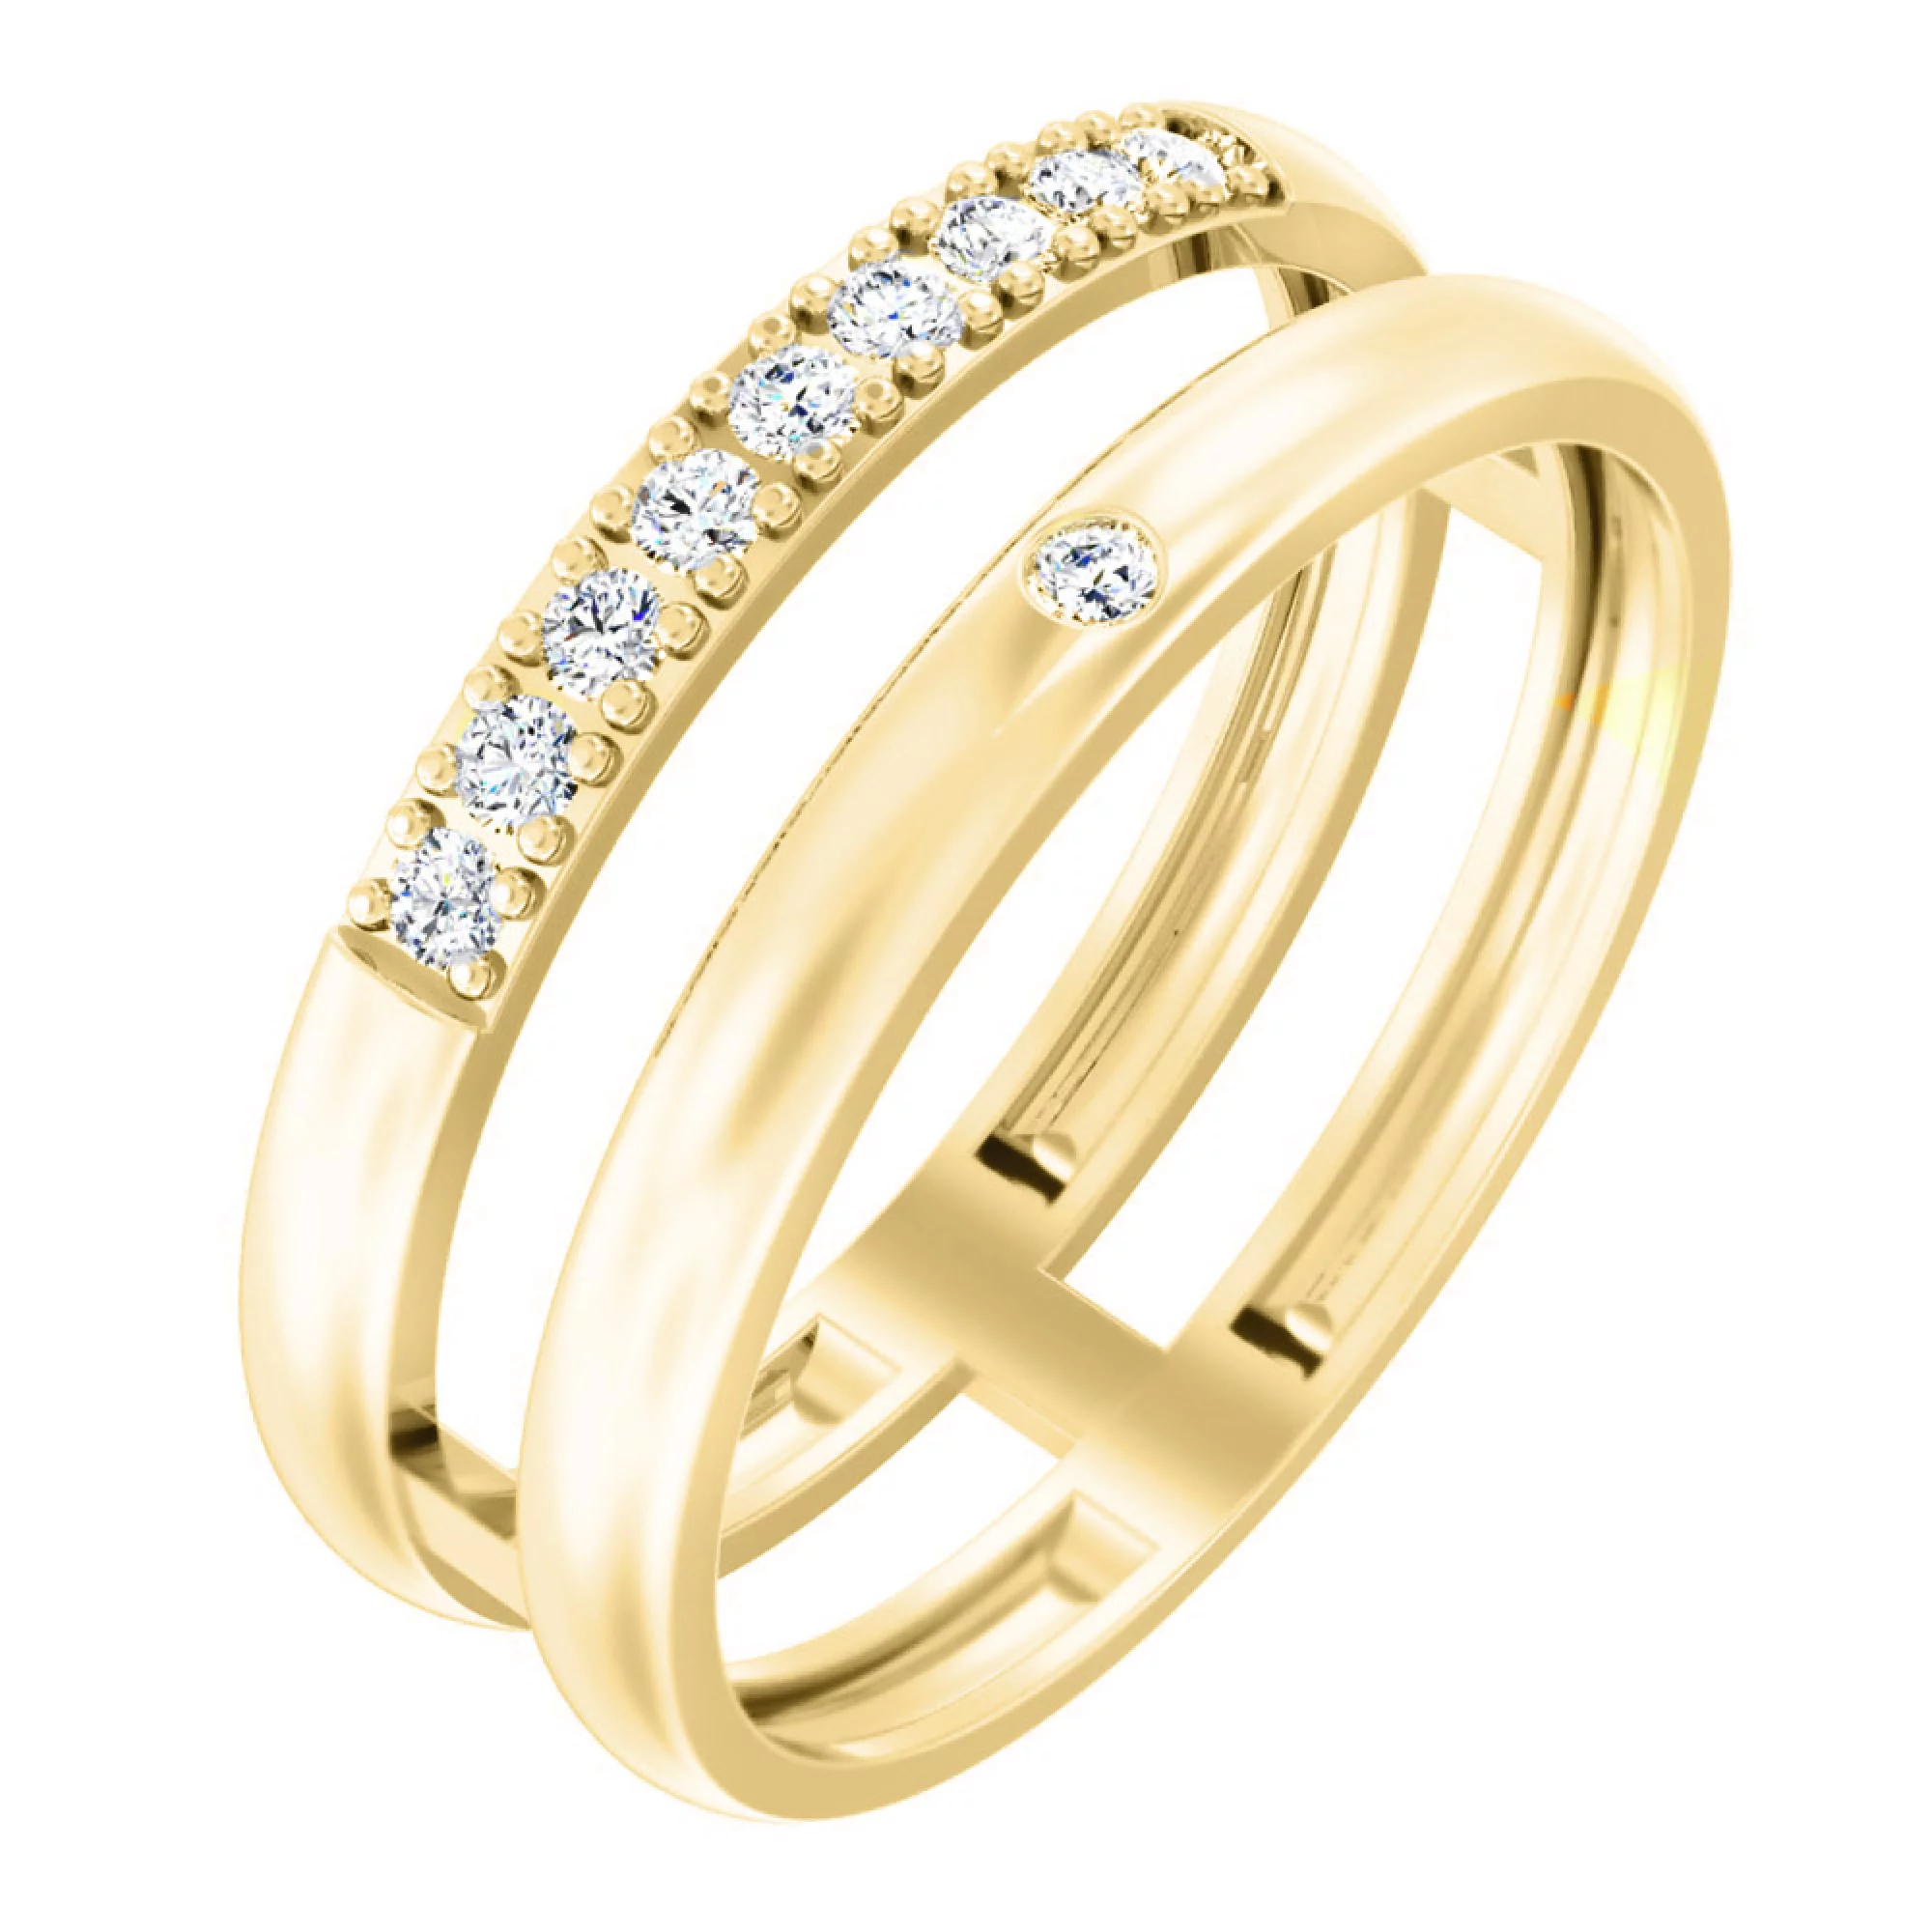 Двойное кольцо из лимонного золота с фианитами - 1787326 – изображение 1